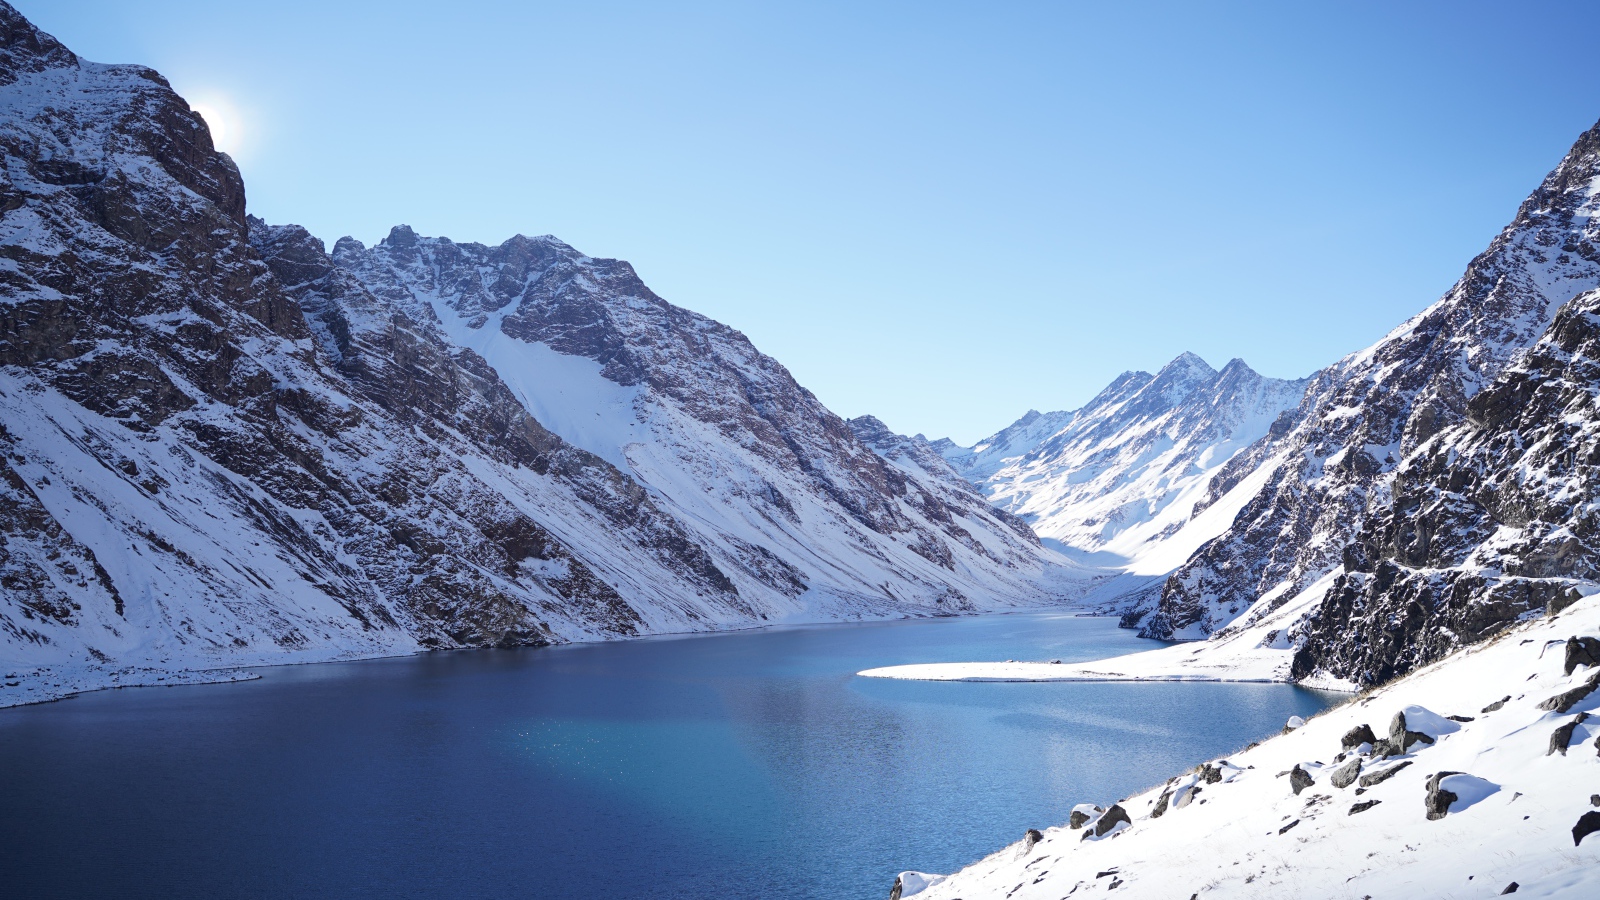 Озеро у покрытых снегом гор под голубым небом